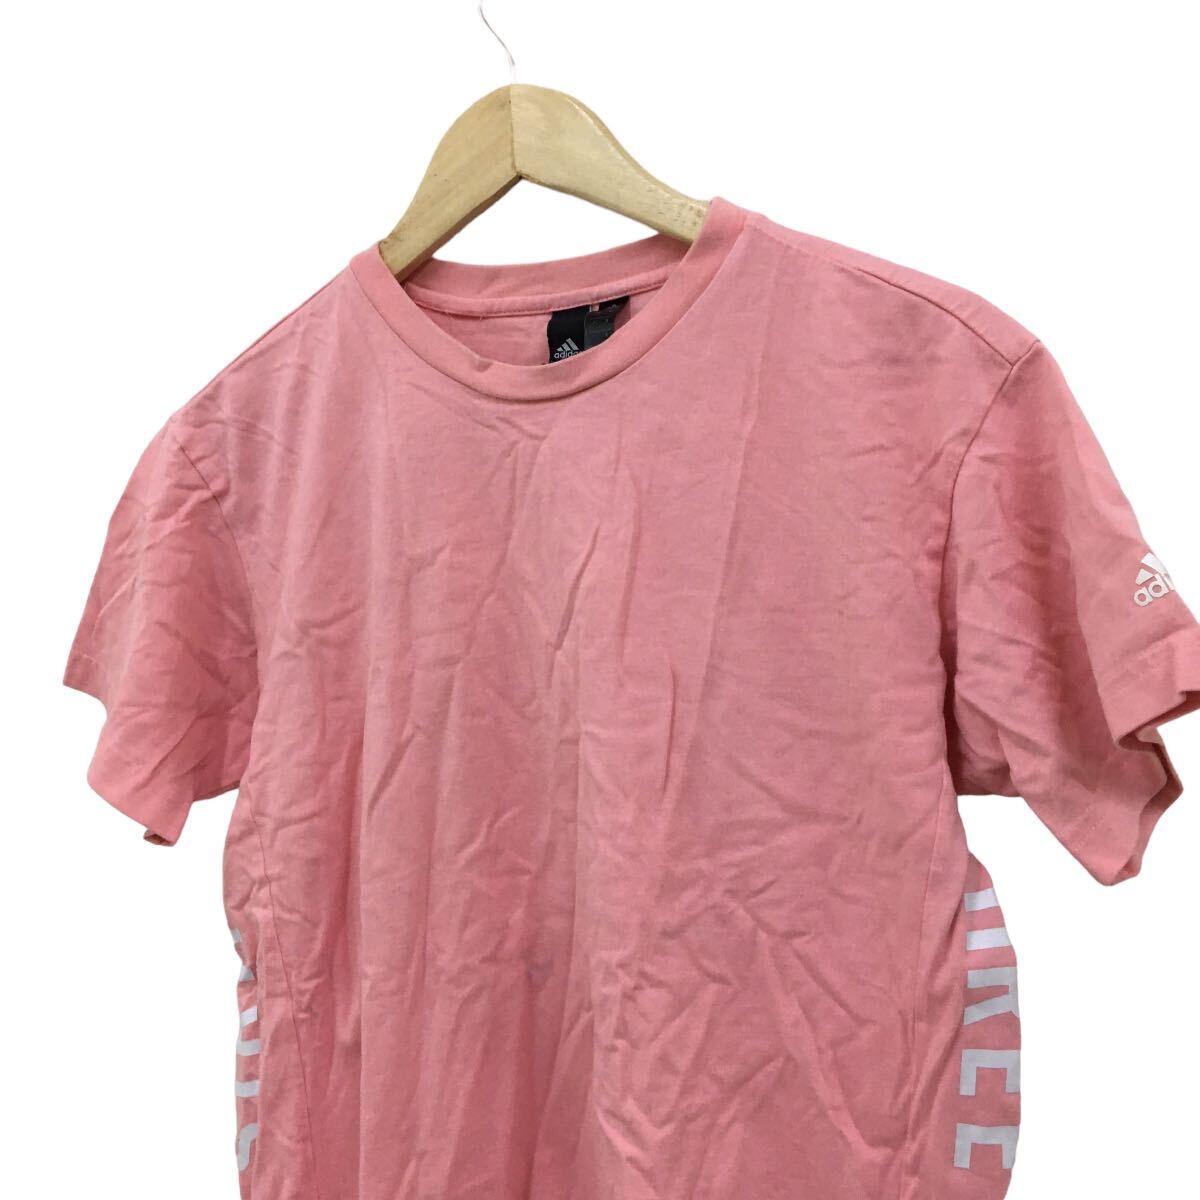 NC223 adidas アディダス 半袖 Tシャツ ティシャツ トップス カットソー メンズ M ピンク コットン 綿 100%_画像3